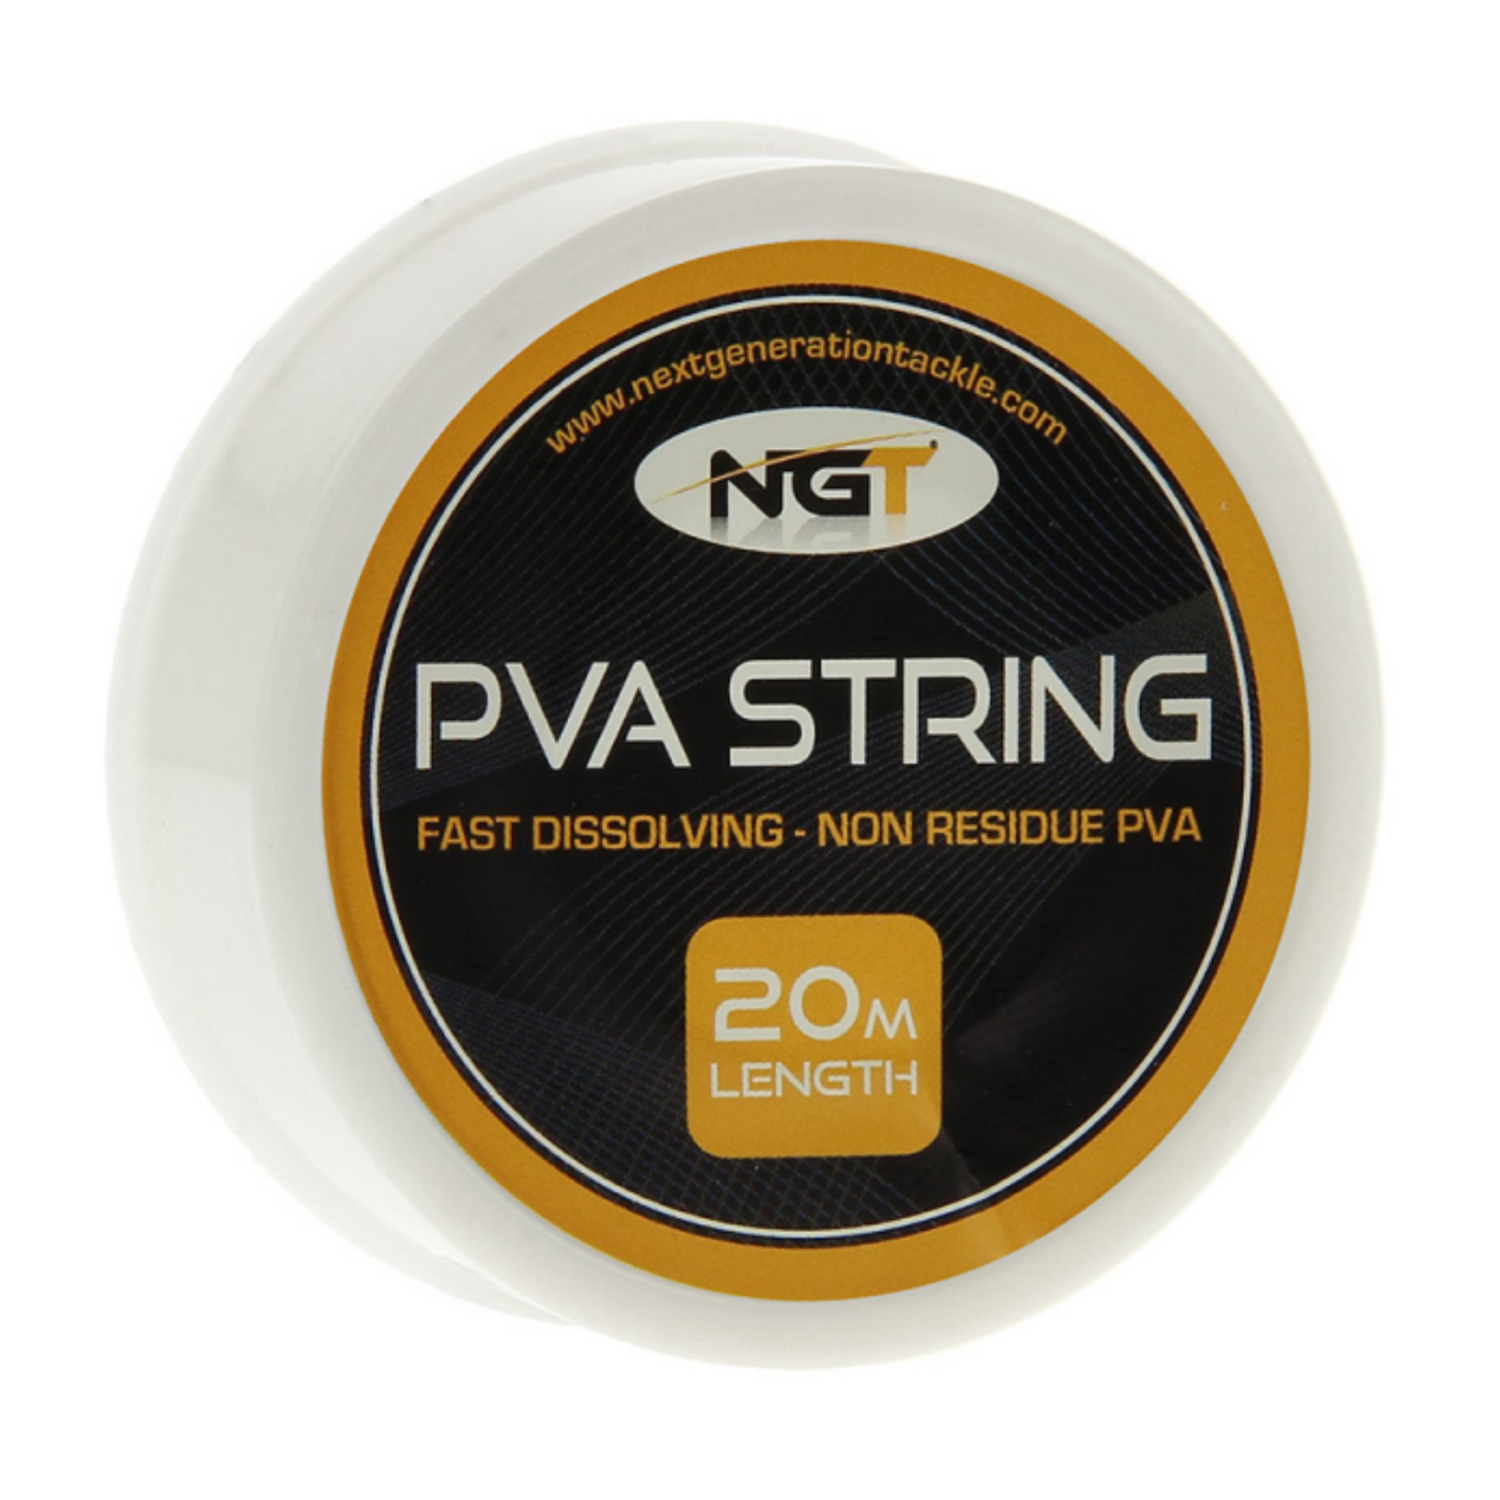 NGT PVA String 20m Length